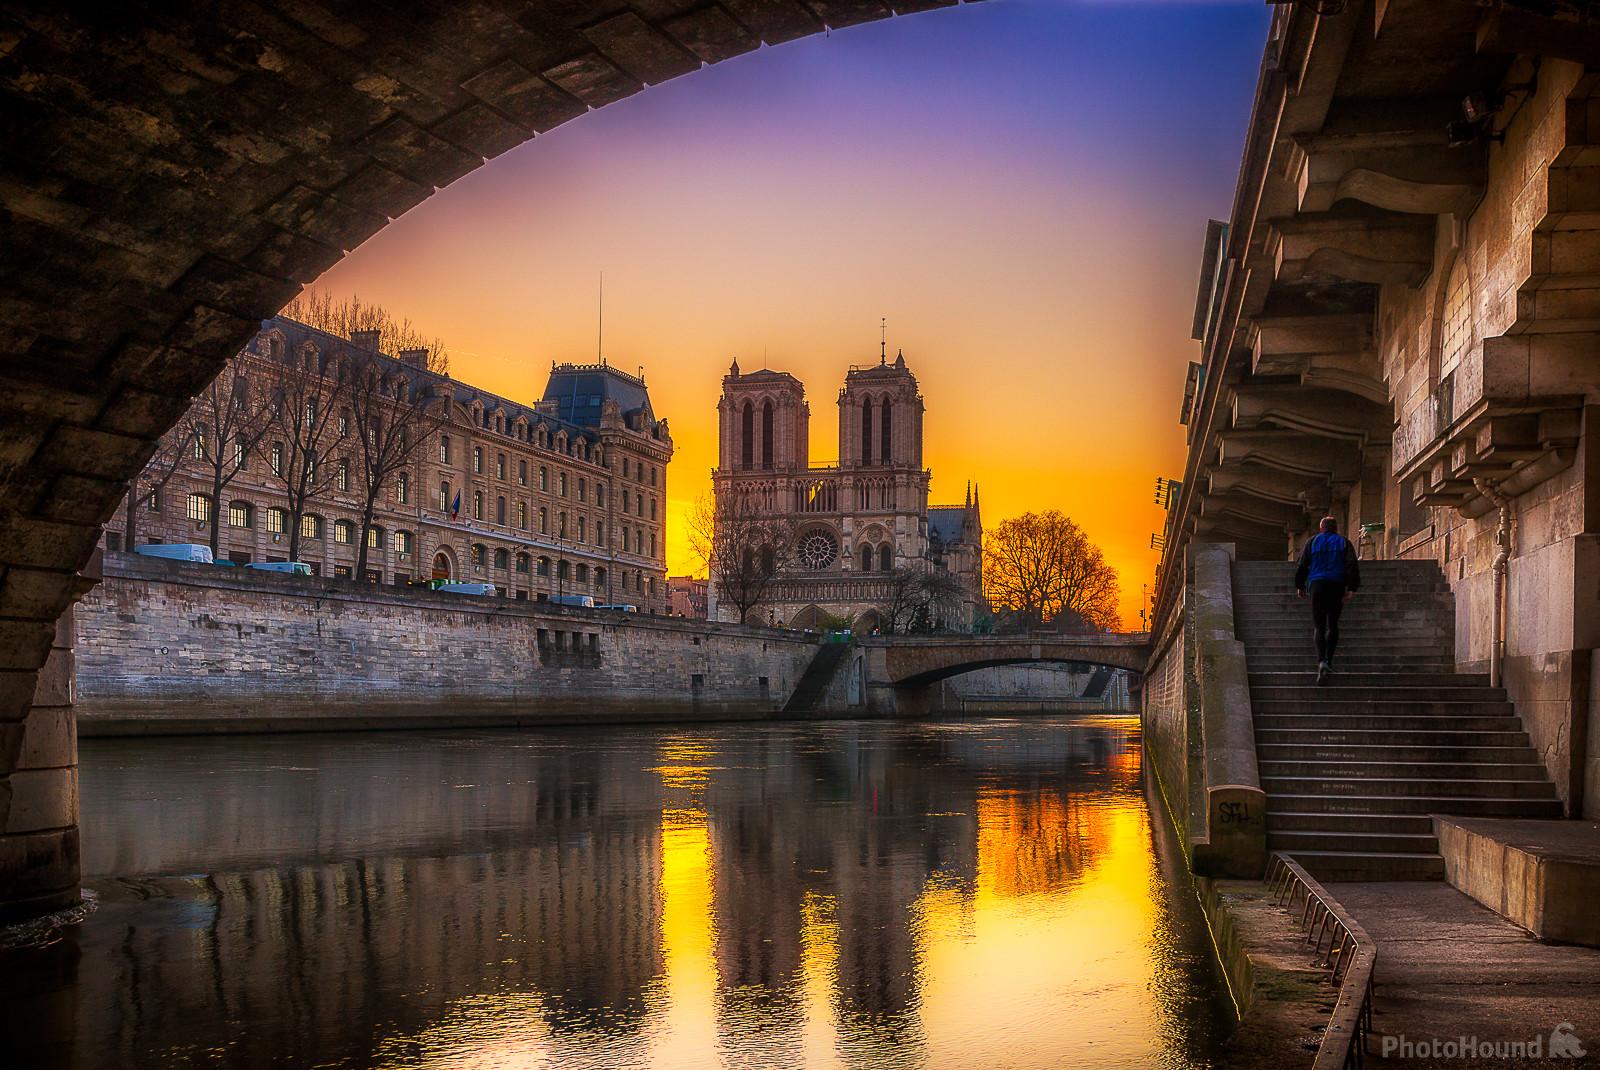 Image of Notre Dame de Paris from beneath Pont St-Michel by Frédéric Monin